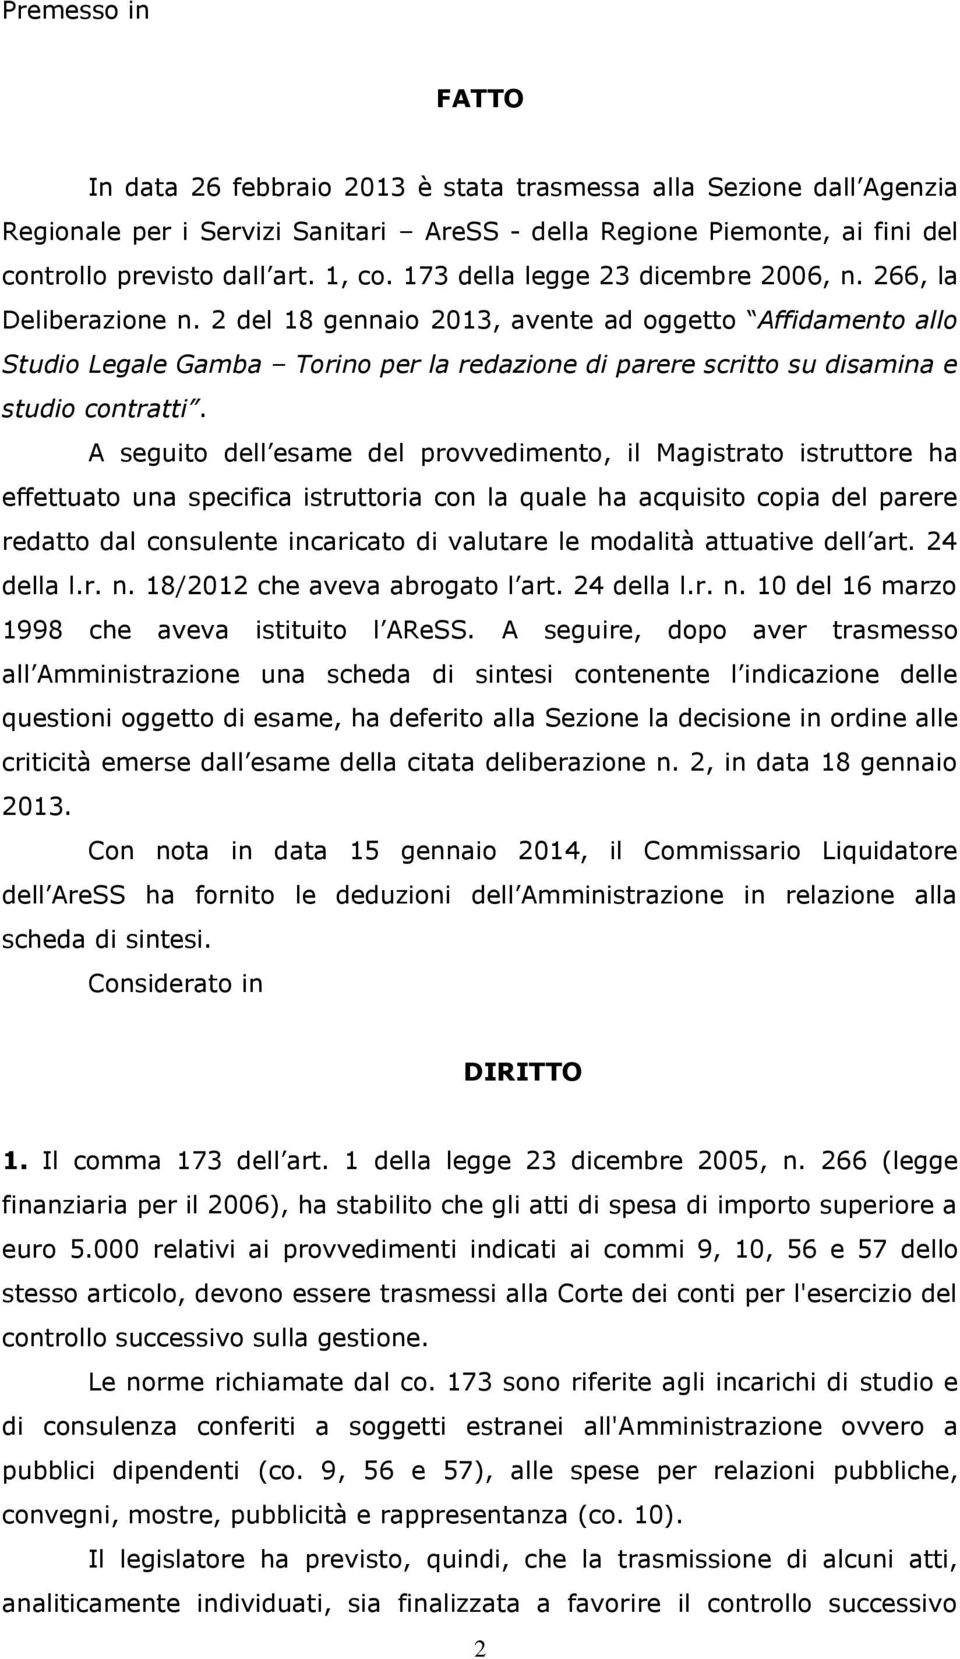 2 del 18 gennaio 2013, avente ad oggetto Affidamento allo Studio Legale Gamba Torino per la redazione di parere scritto su disamina e studio contratti.